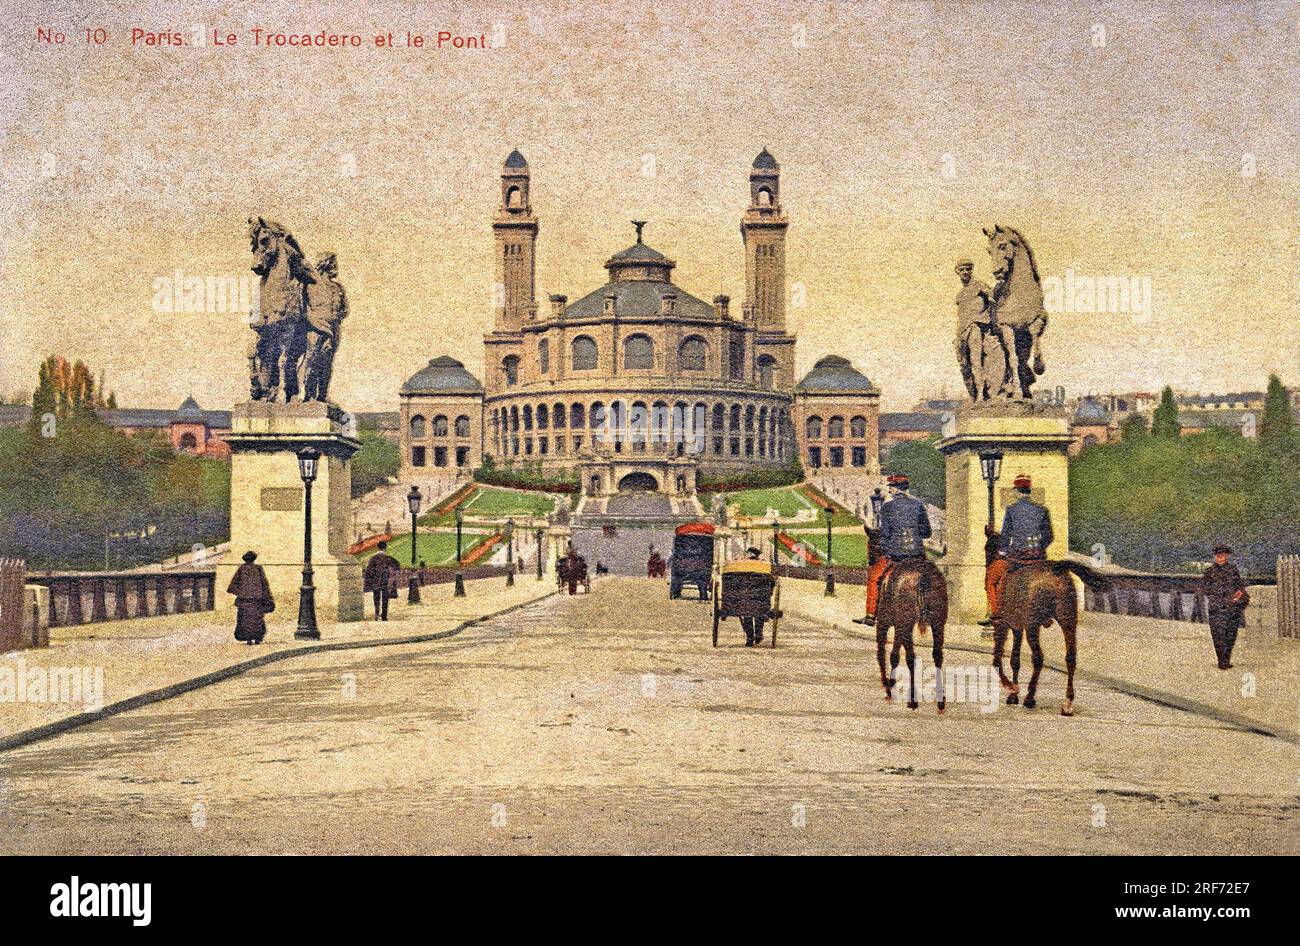 Vue du Trocadéro et du Pont d'Iena, annees 1920. Carte postale, Paris, 1920. Banque D'Images